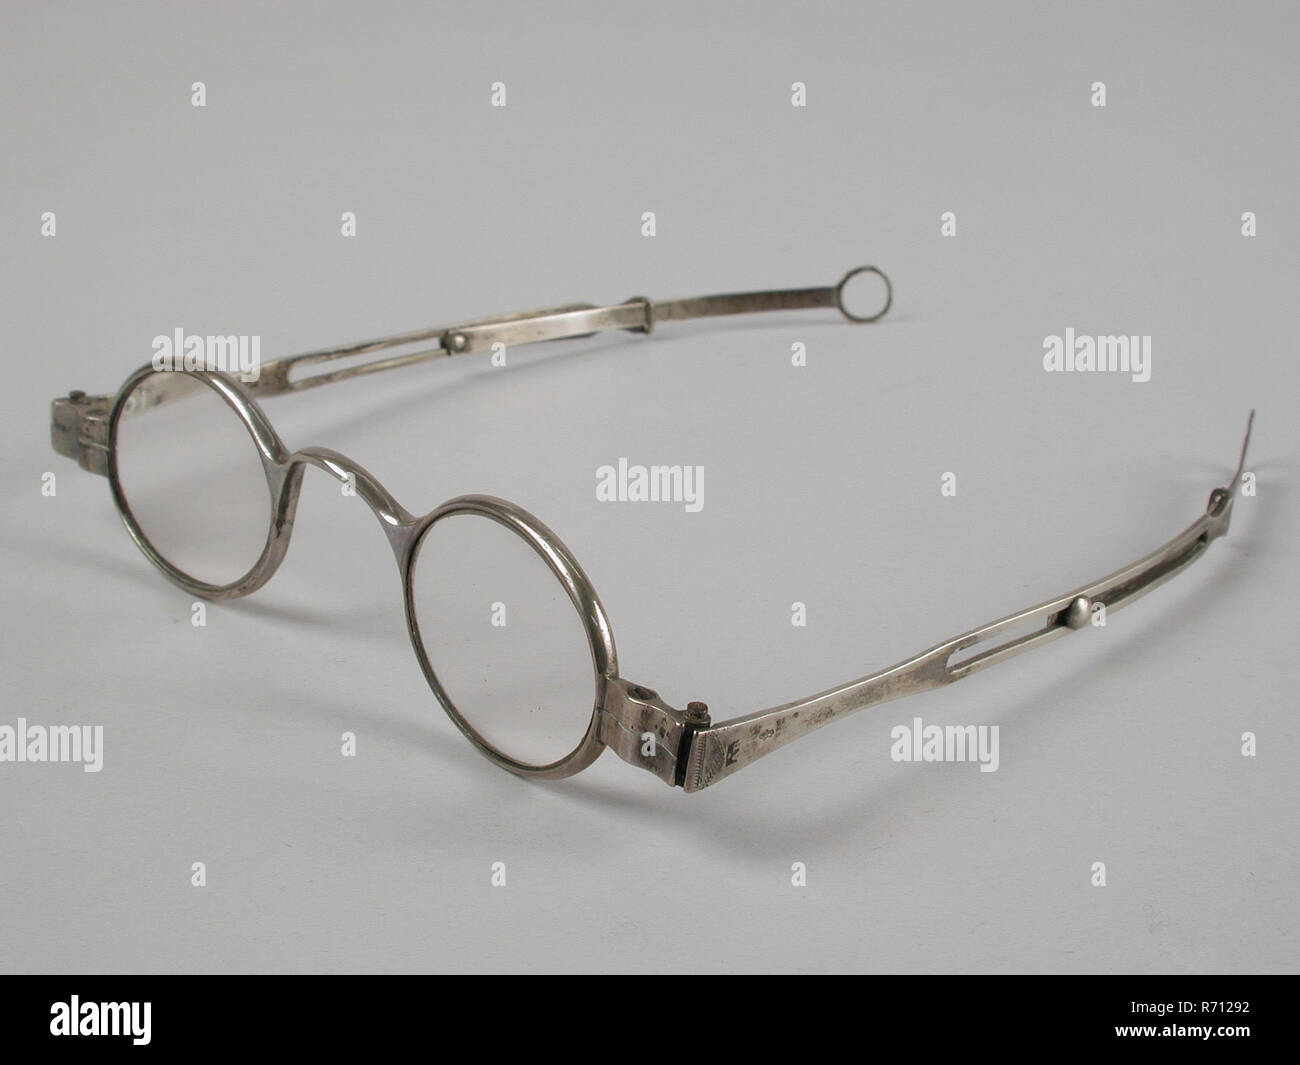 Gafas con lentes en la fuerza, Marco plateado y plumas, espectáculo recto ajustable lente ojo de vidrio metal plateado, gafas con lentes ovalados en la fuerza. El bastidor y el